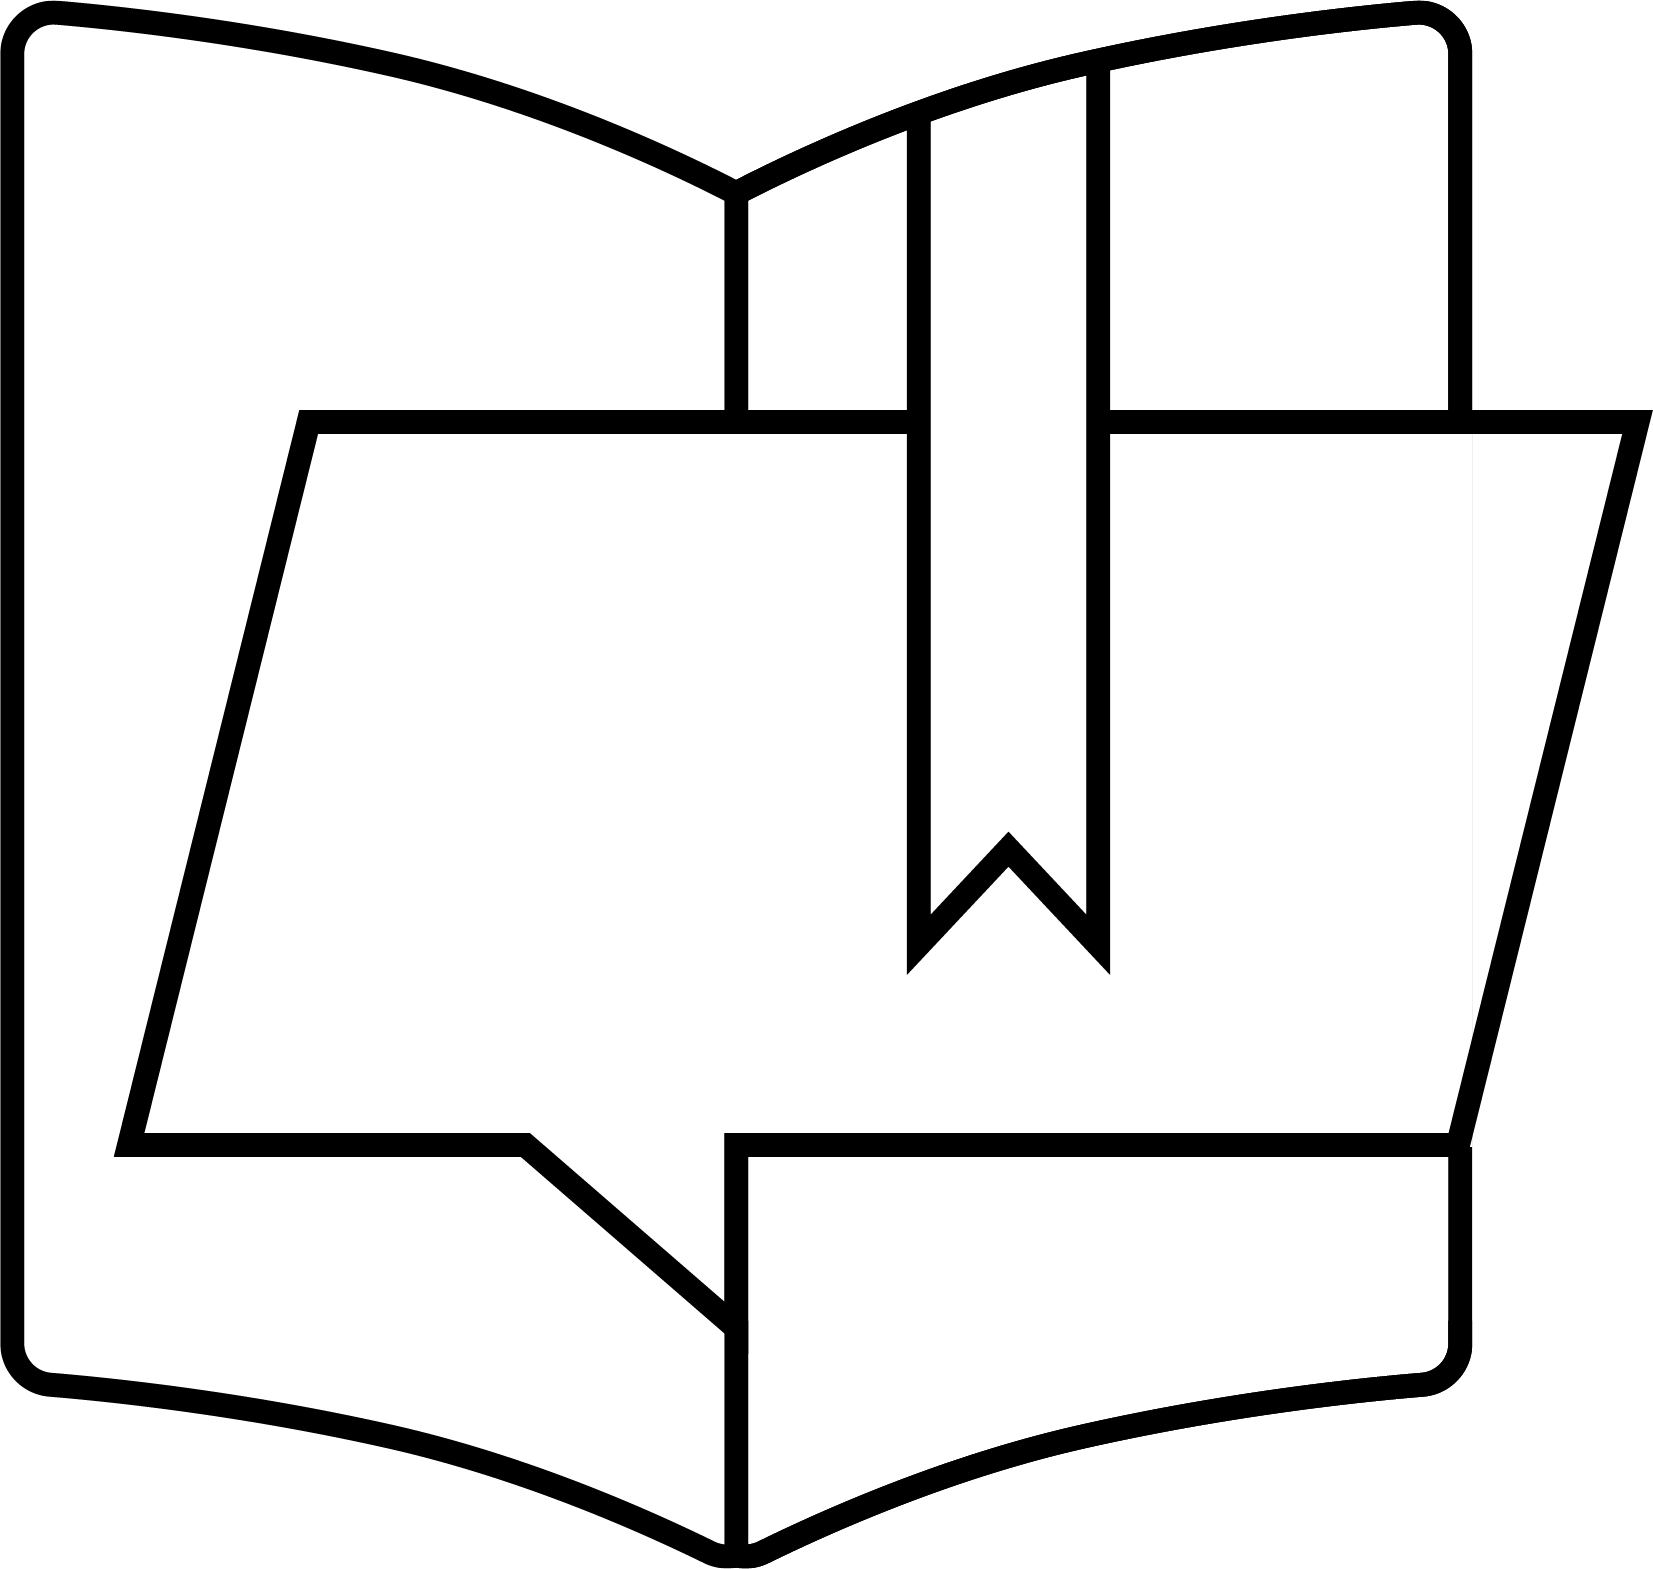 Qwyga logo